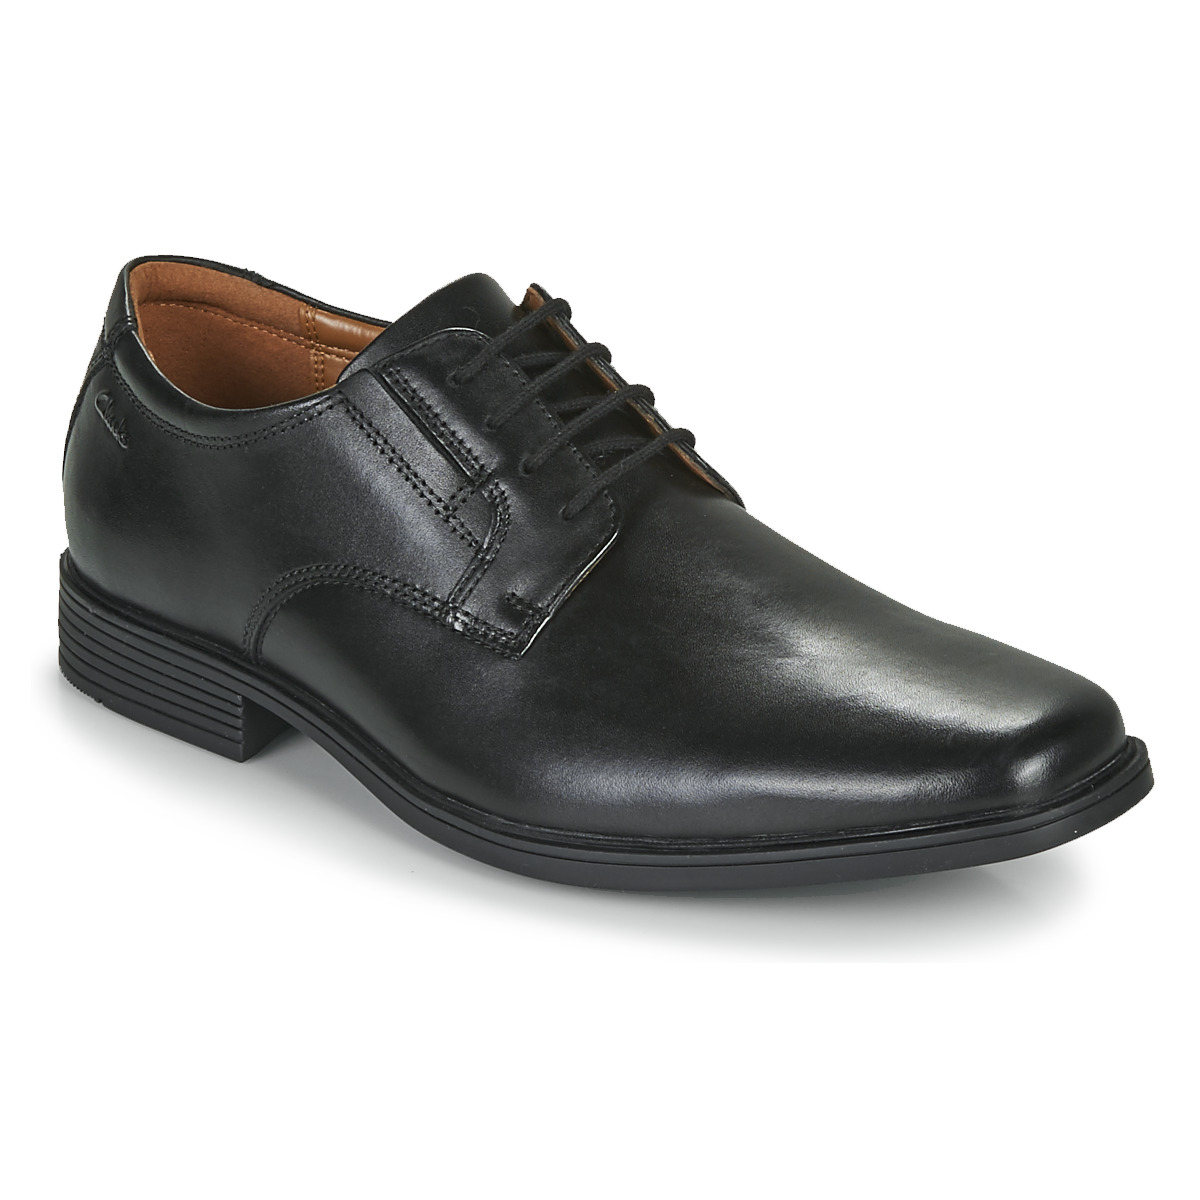 Clarks Heren schoenen - Tilden Plain  G - Black leather - Maat 43